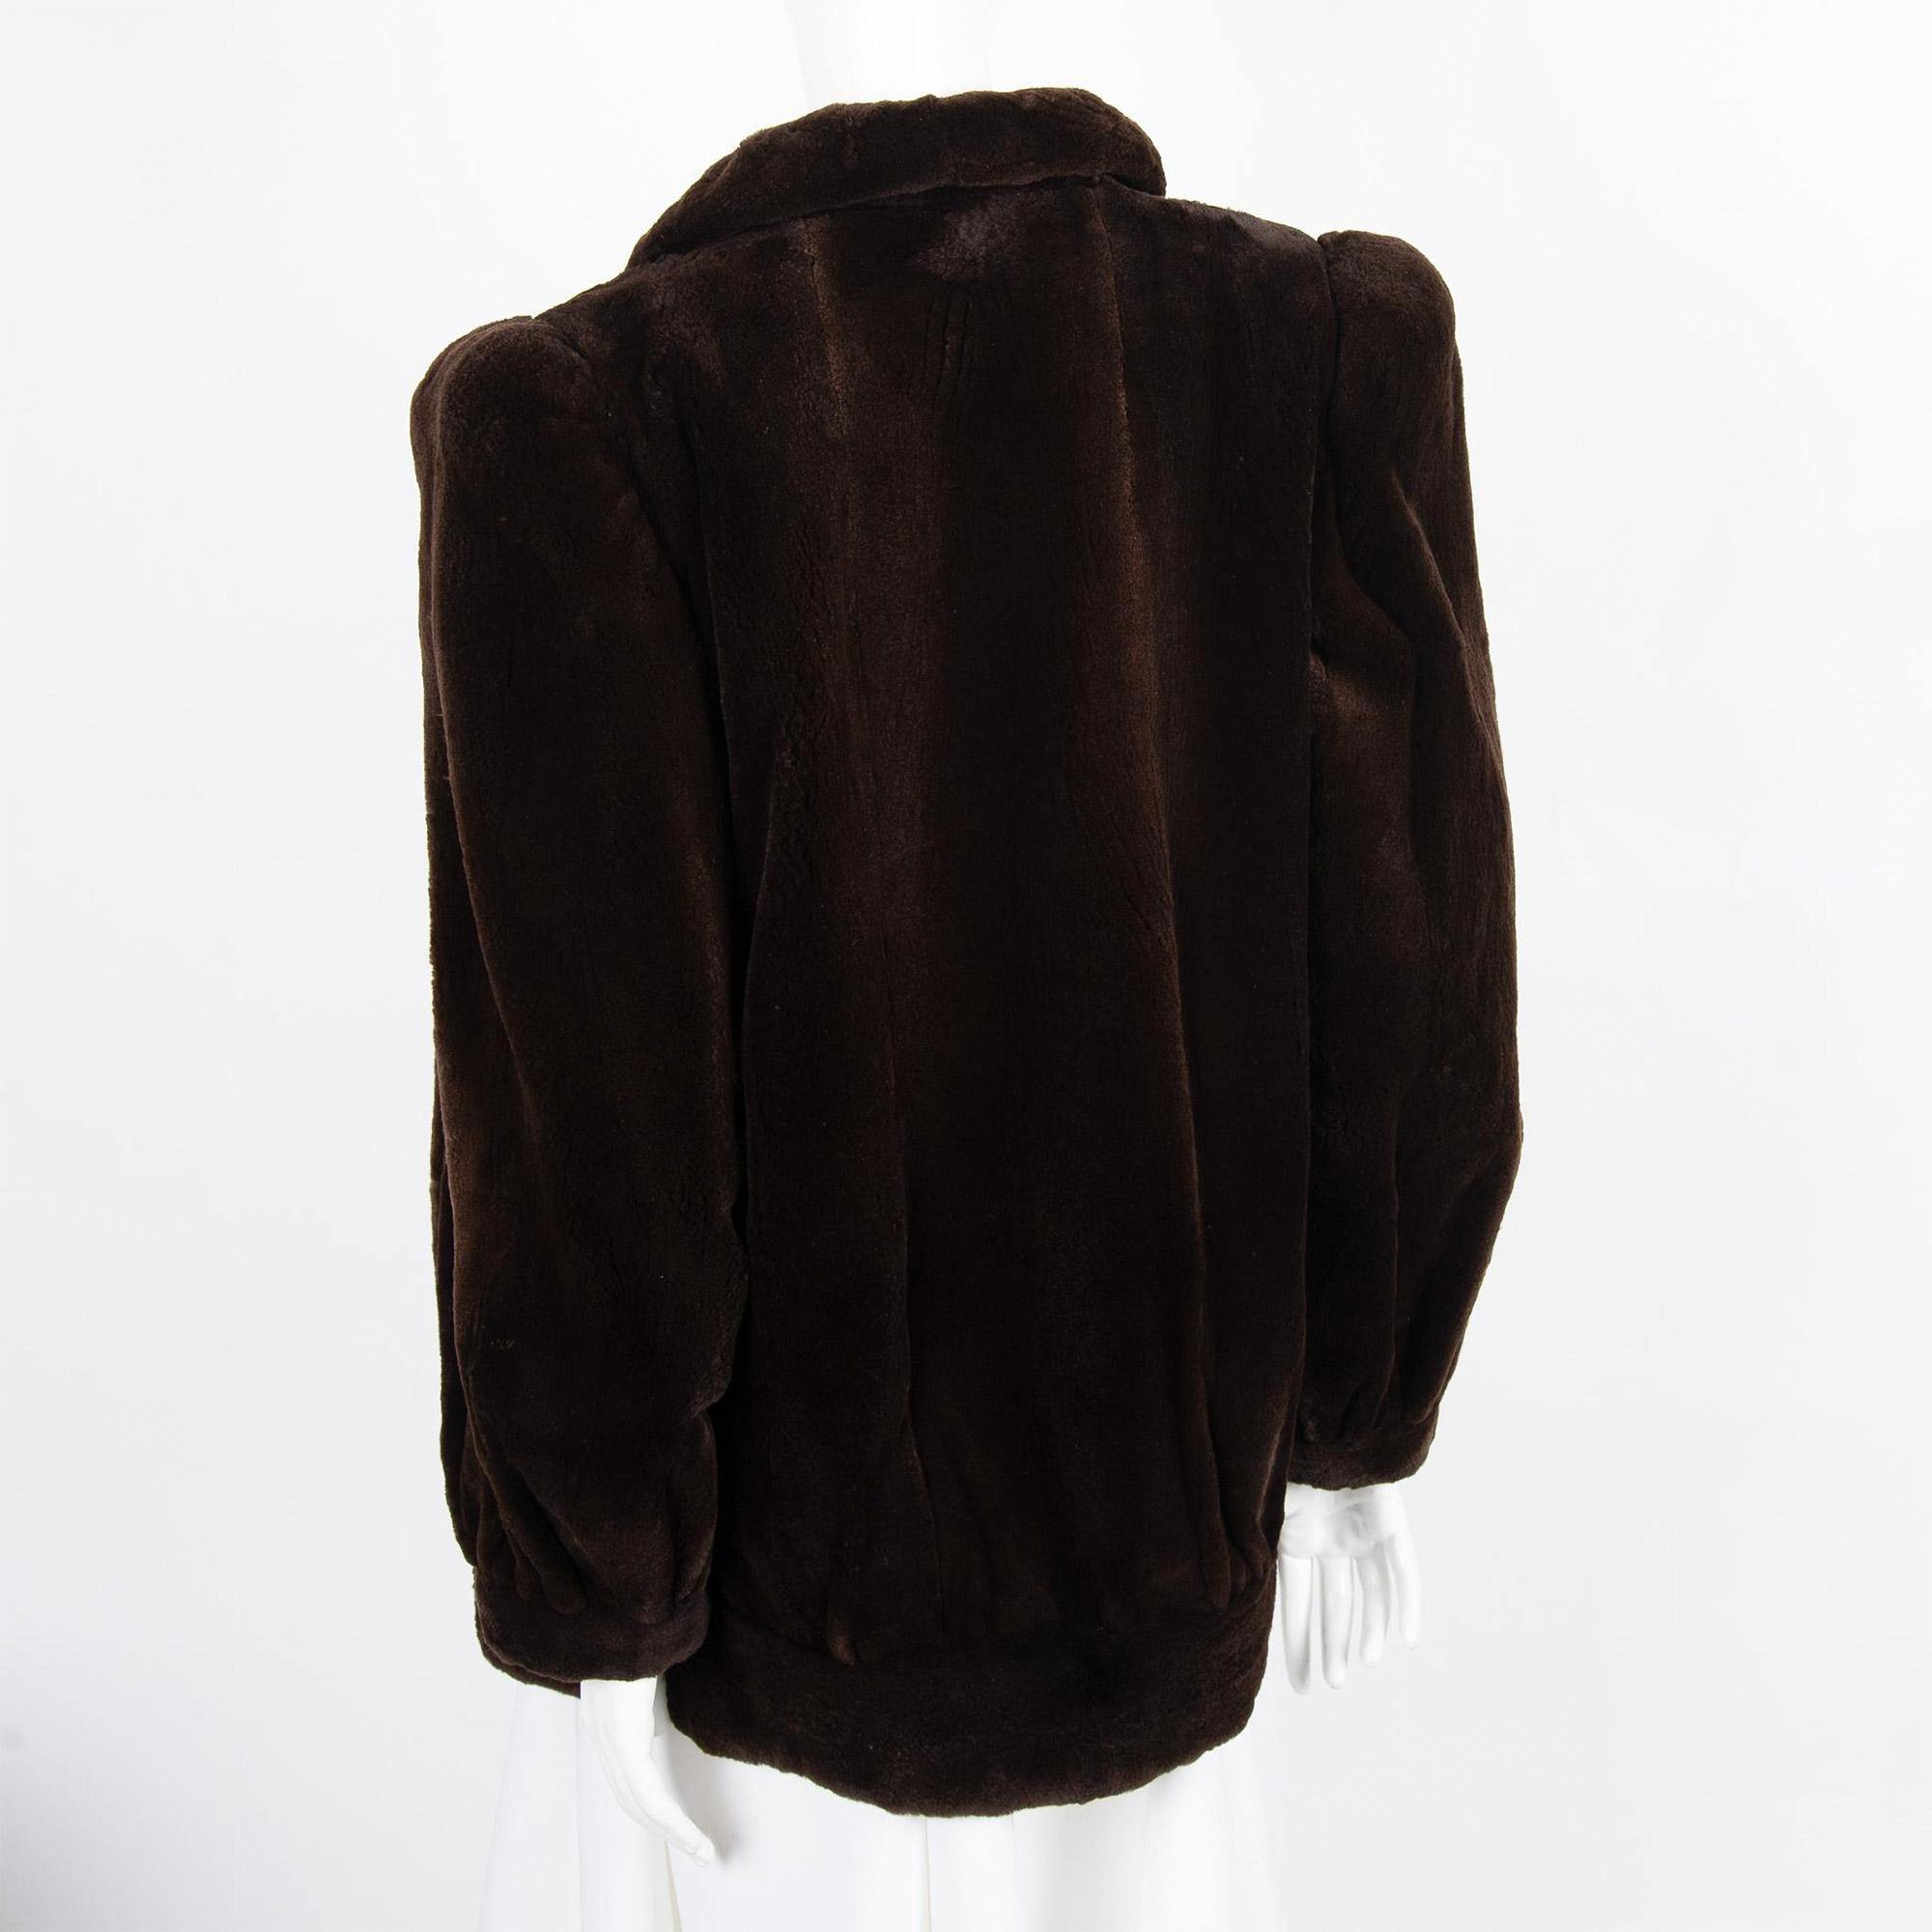 Vintage Rosendorf Evans Mouton Brown Fur Short Coat - Image 7 of 9